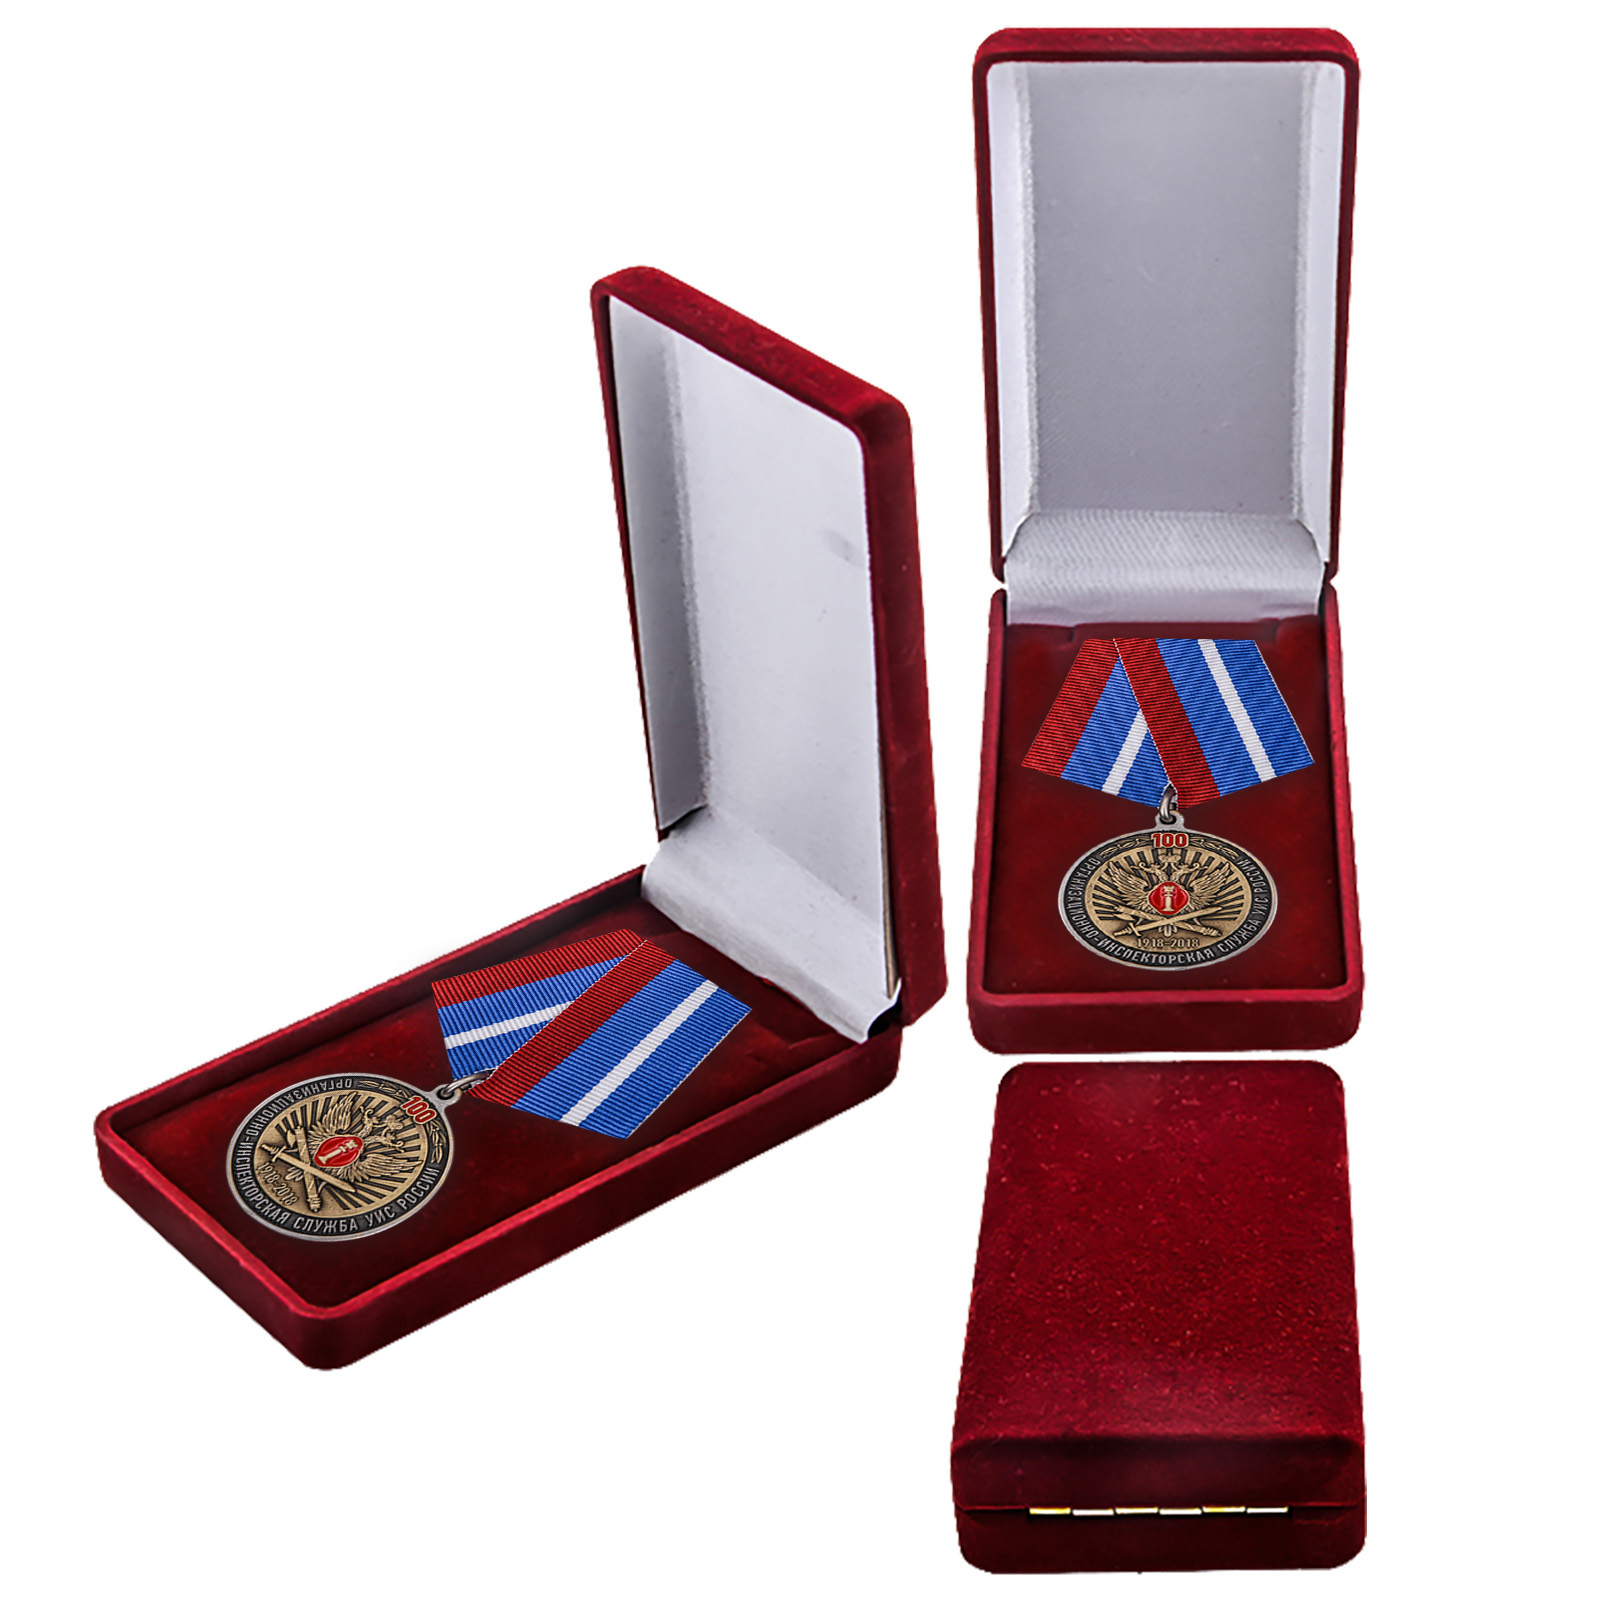 Купить юбилейную медаль 100 лет Организационно-инспекторской службы УИС России в подарок